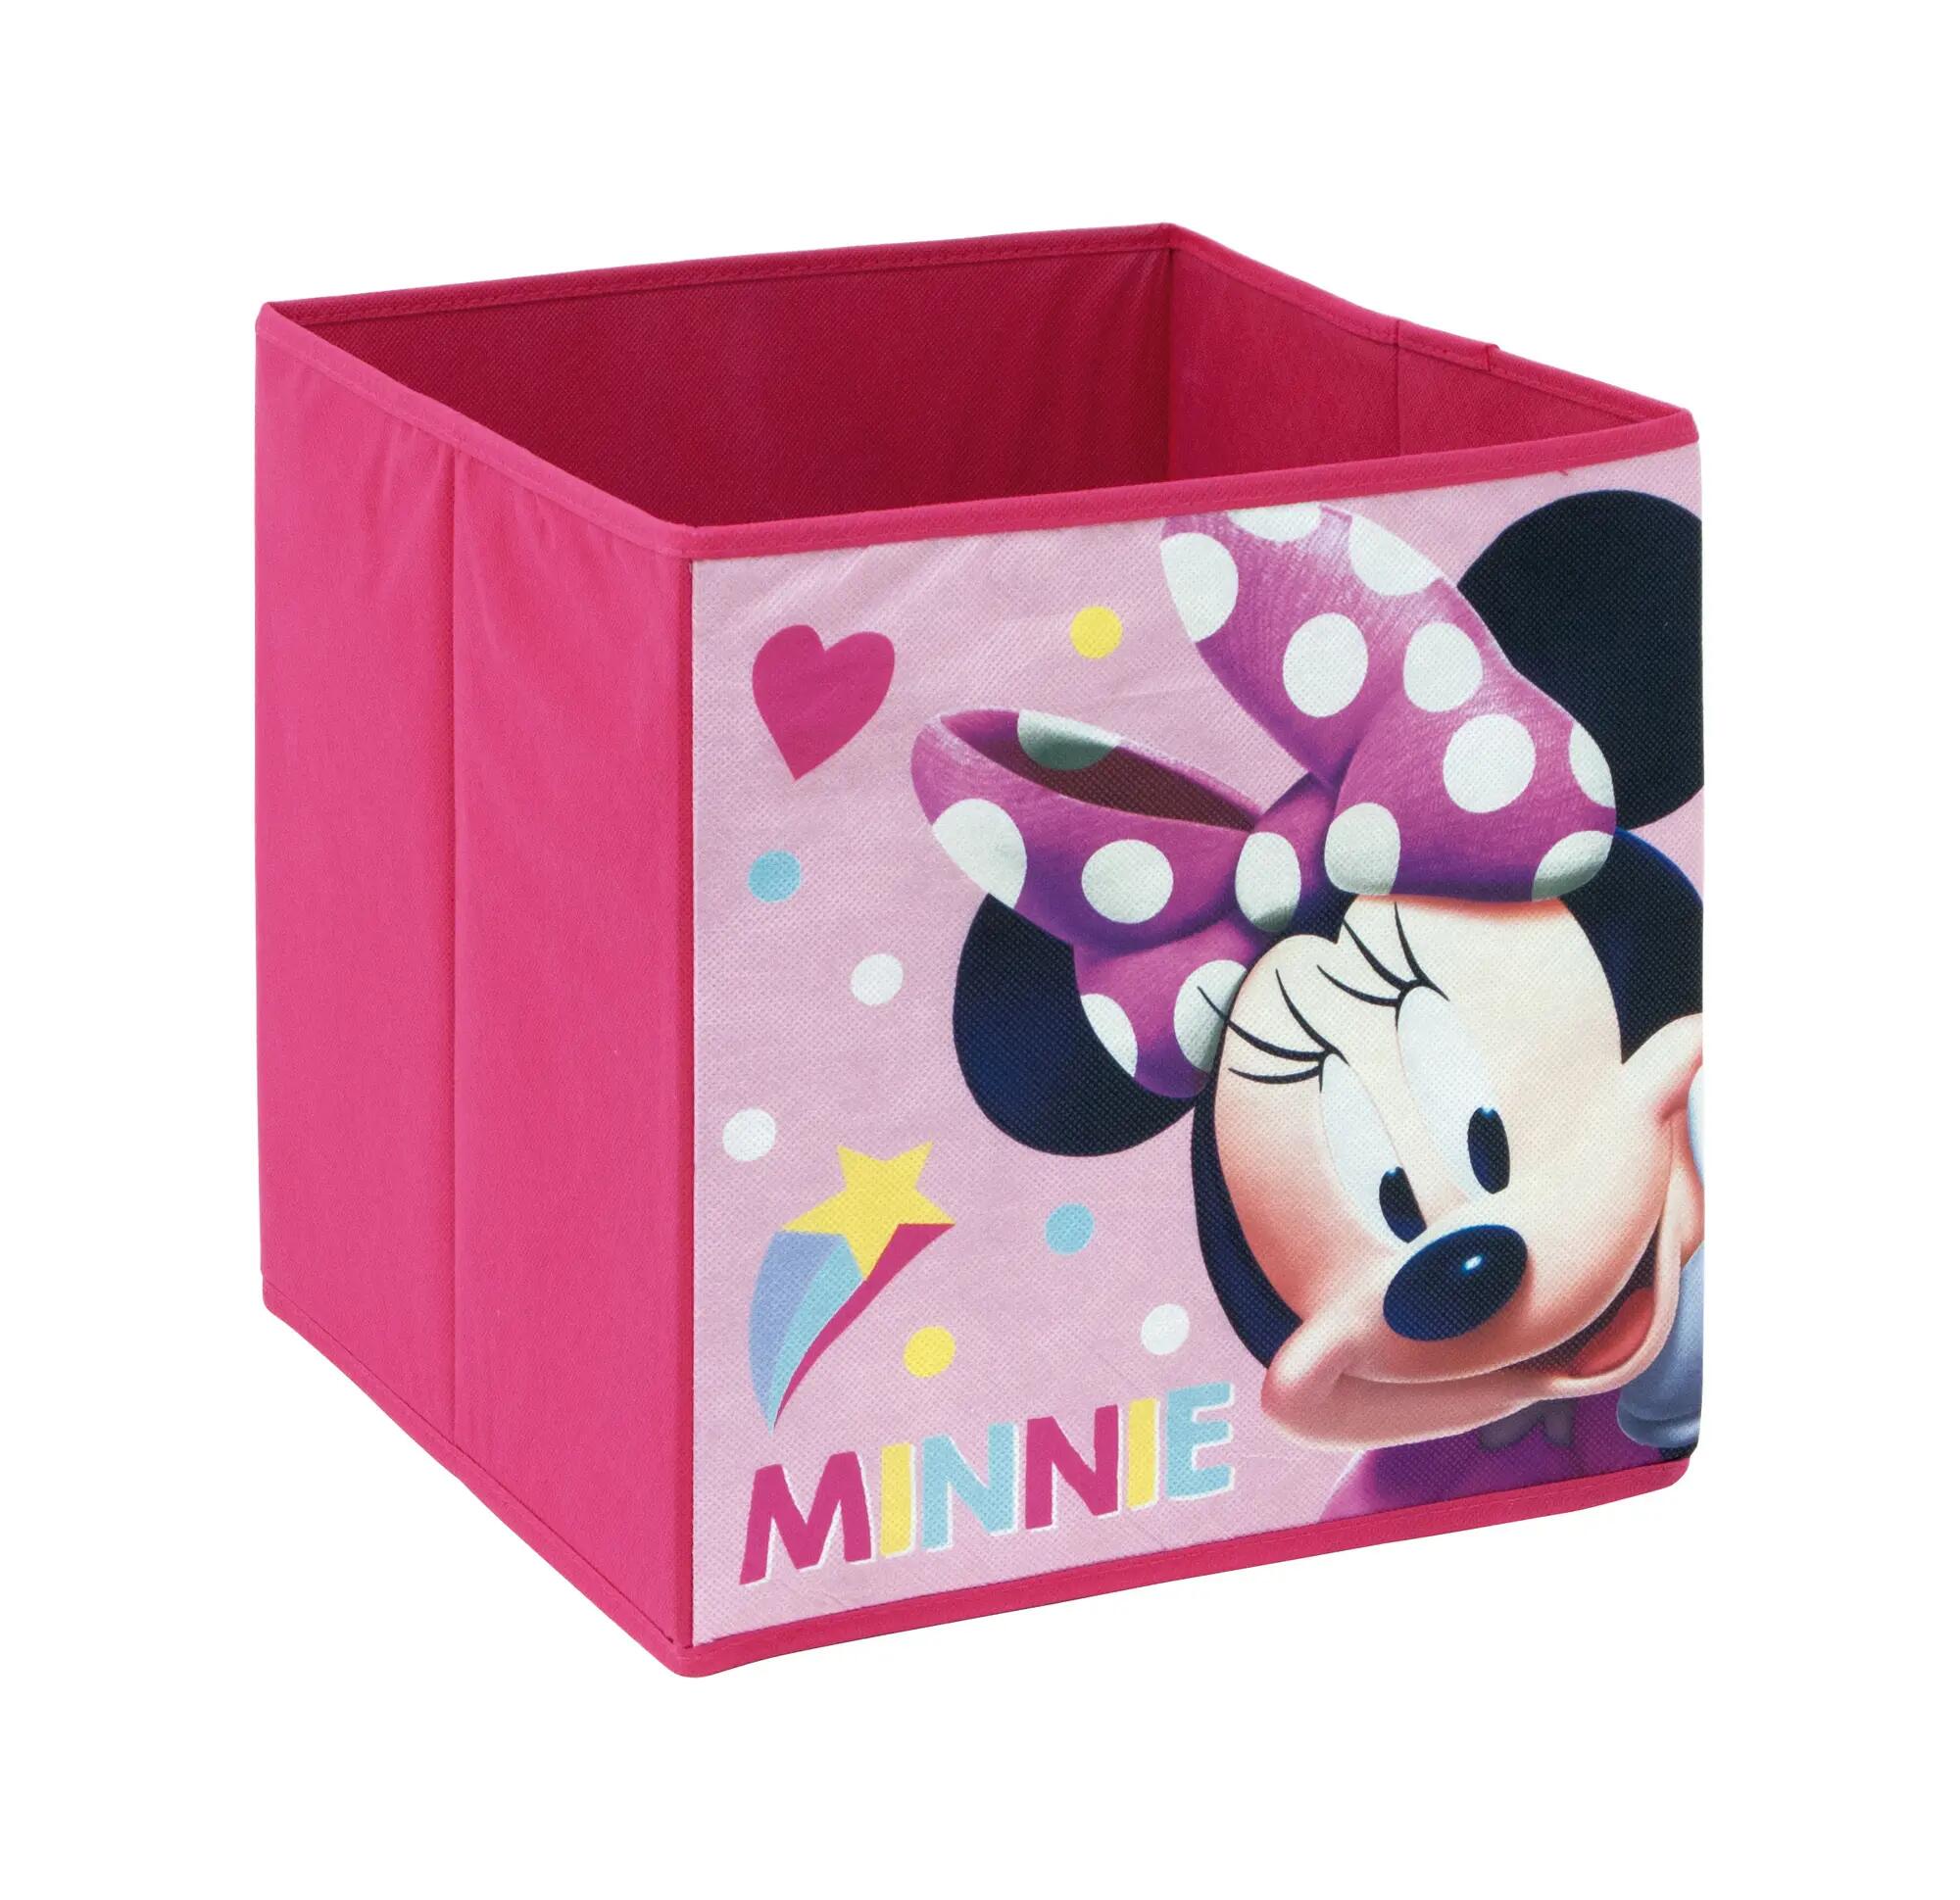 Cesta de tela plegable de minnie mouse color rosa de 31x31x31 cm